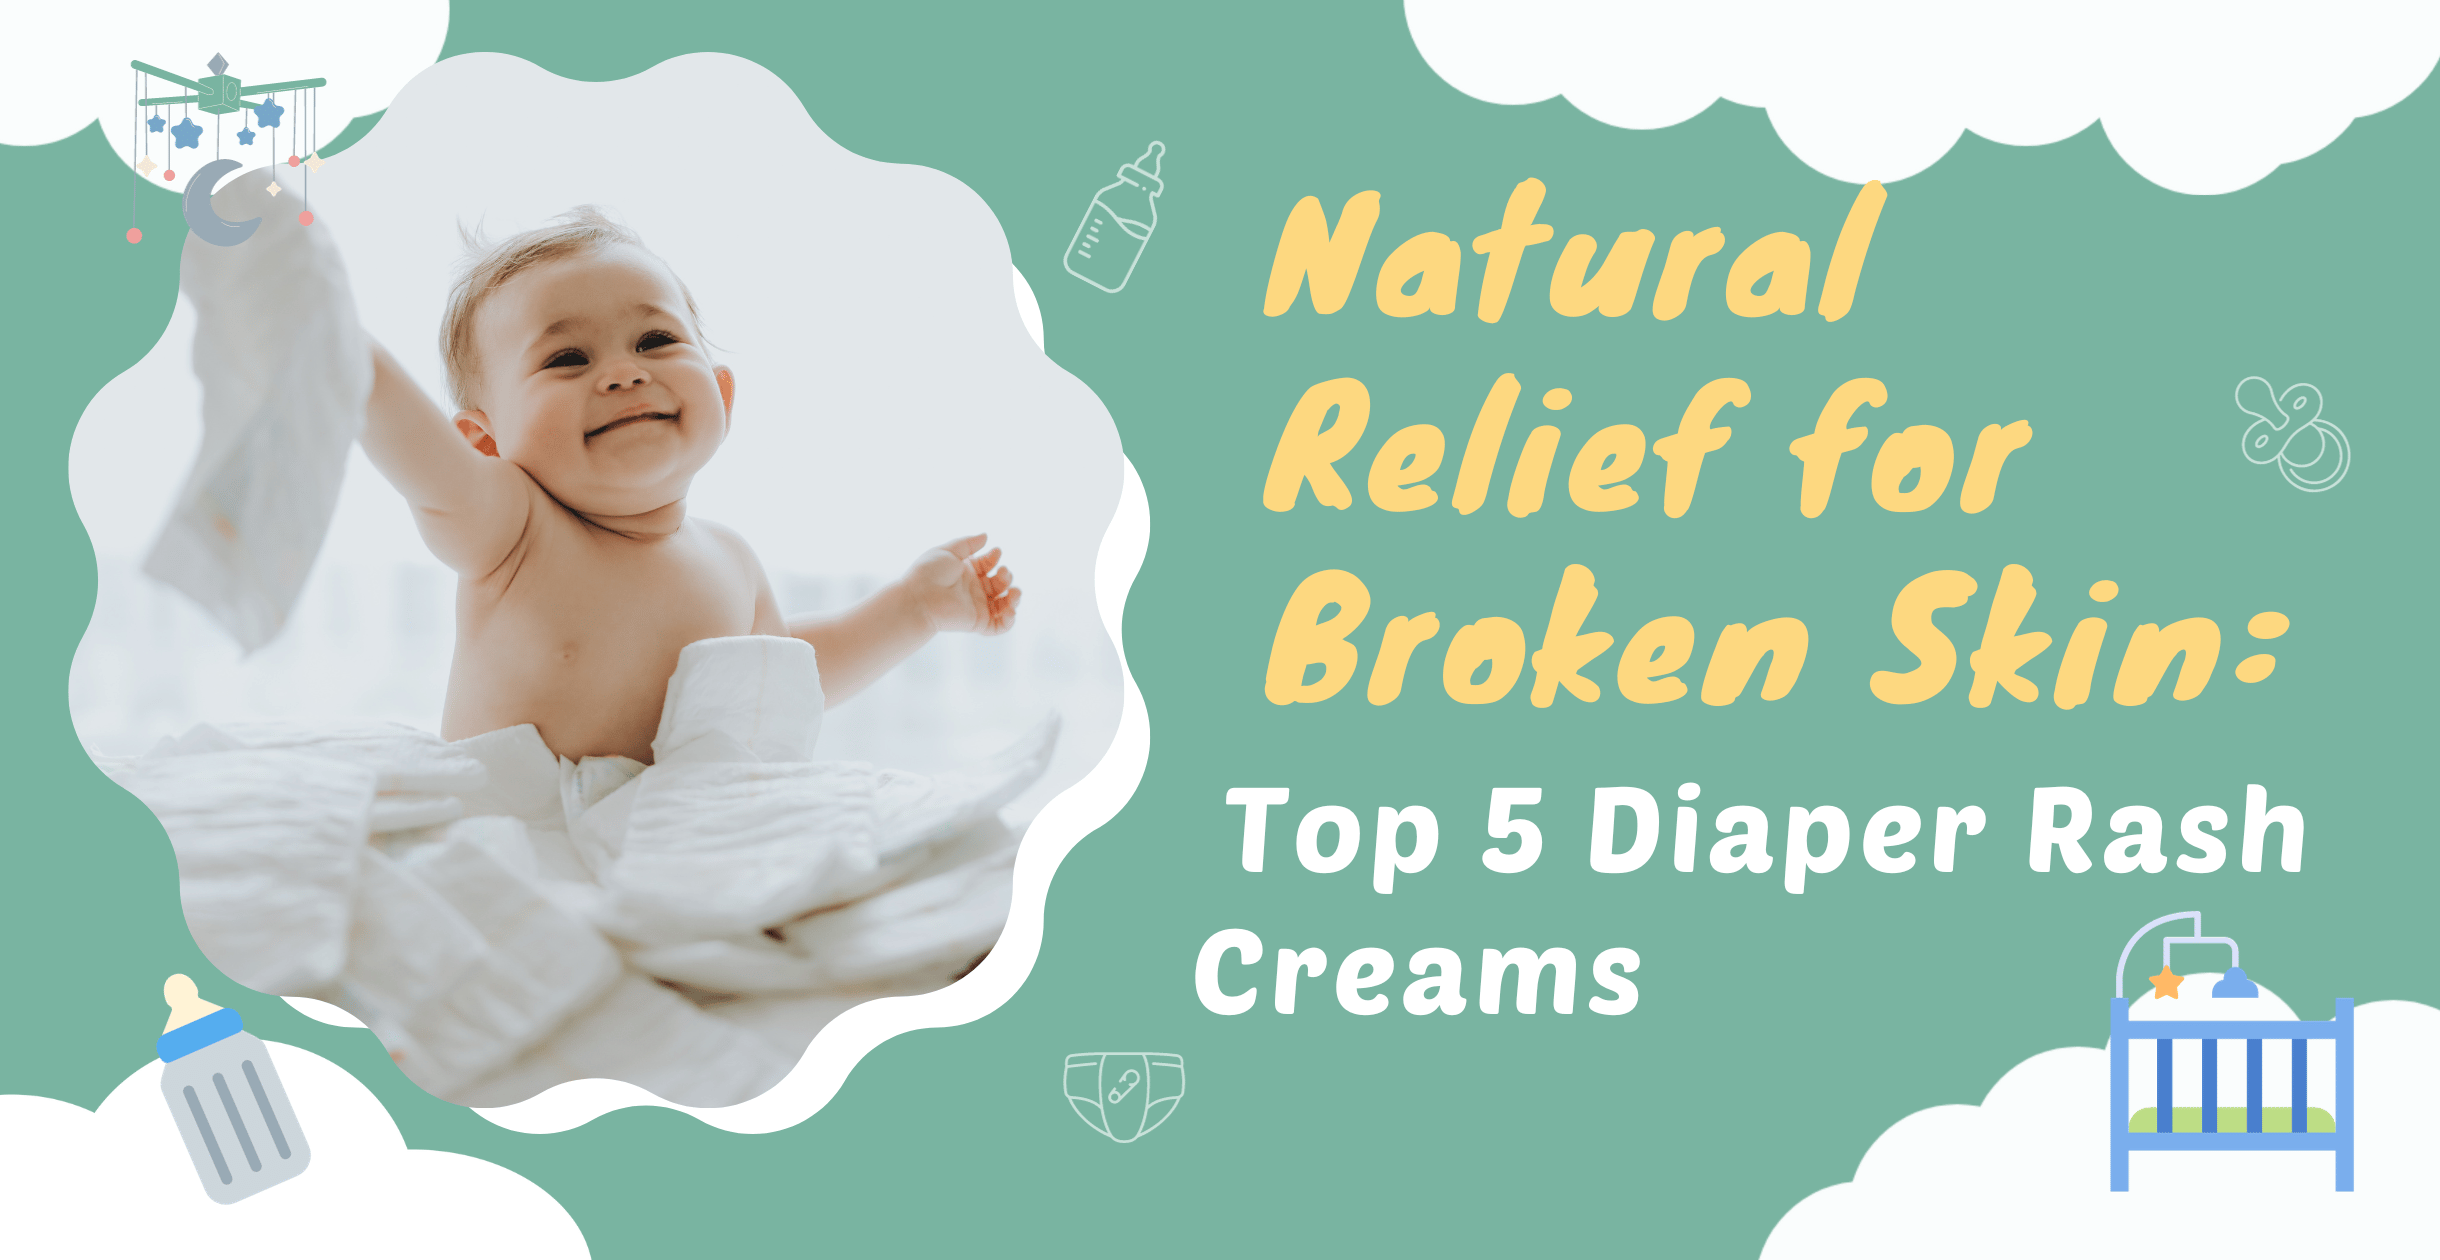 Natural Relief for Broken Skin: Top 5 Diaper Rash Creams